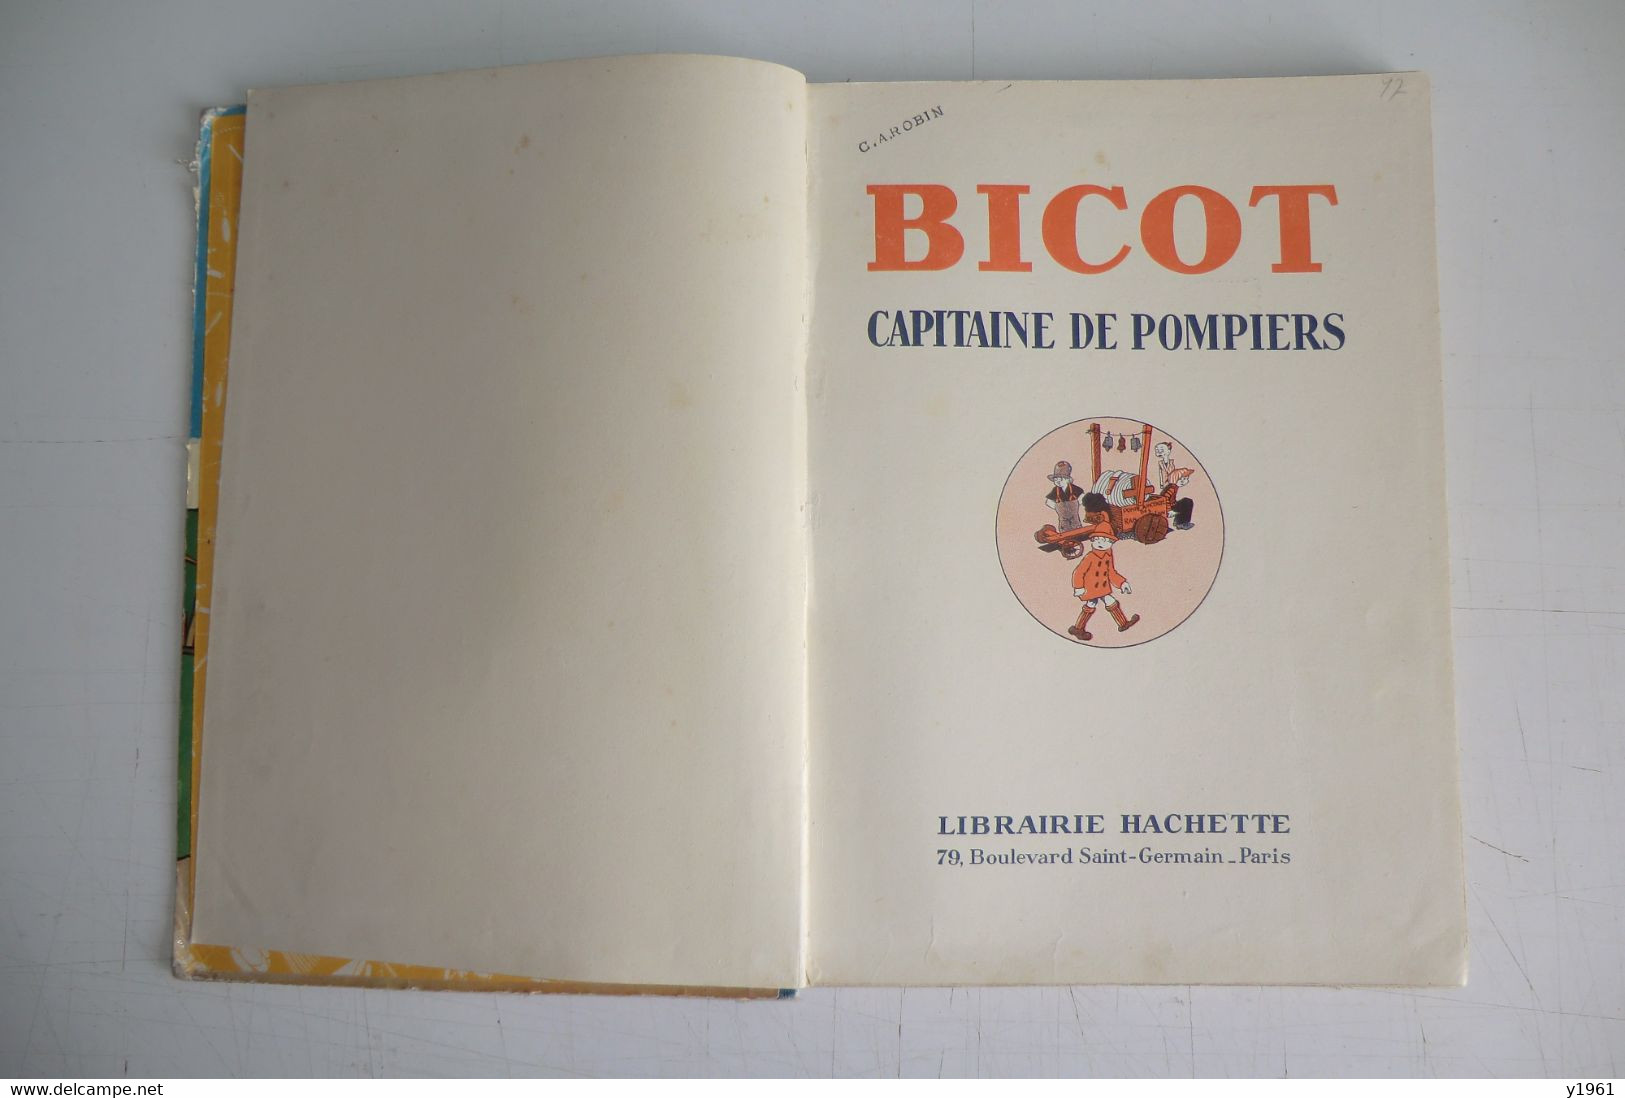 BICOT CAPITAINE DE POMPIERS. HACHETTE PARIS 1934. BON ETAT. - Hachette